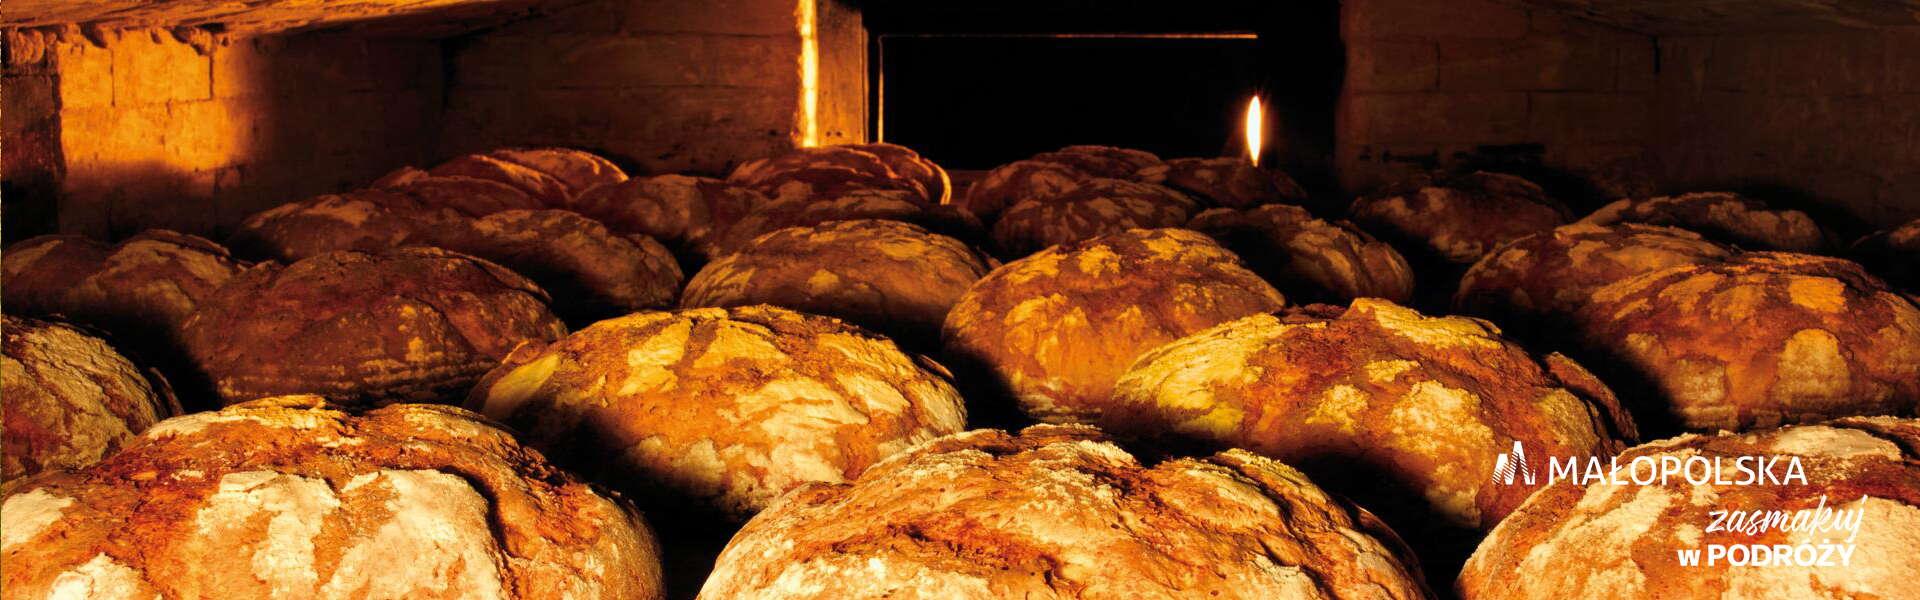 Wiele bochenków chleba ułożonych jeden przy drugim, w prawym dolnym rogu logo Małopolski i napis Zasmakuj w podróży